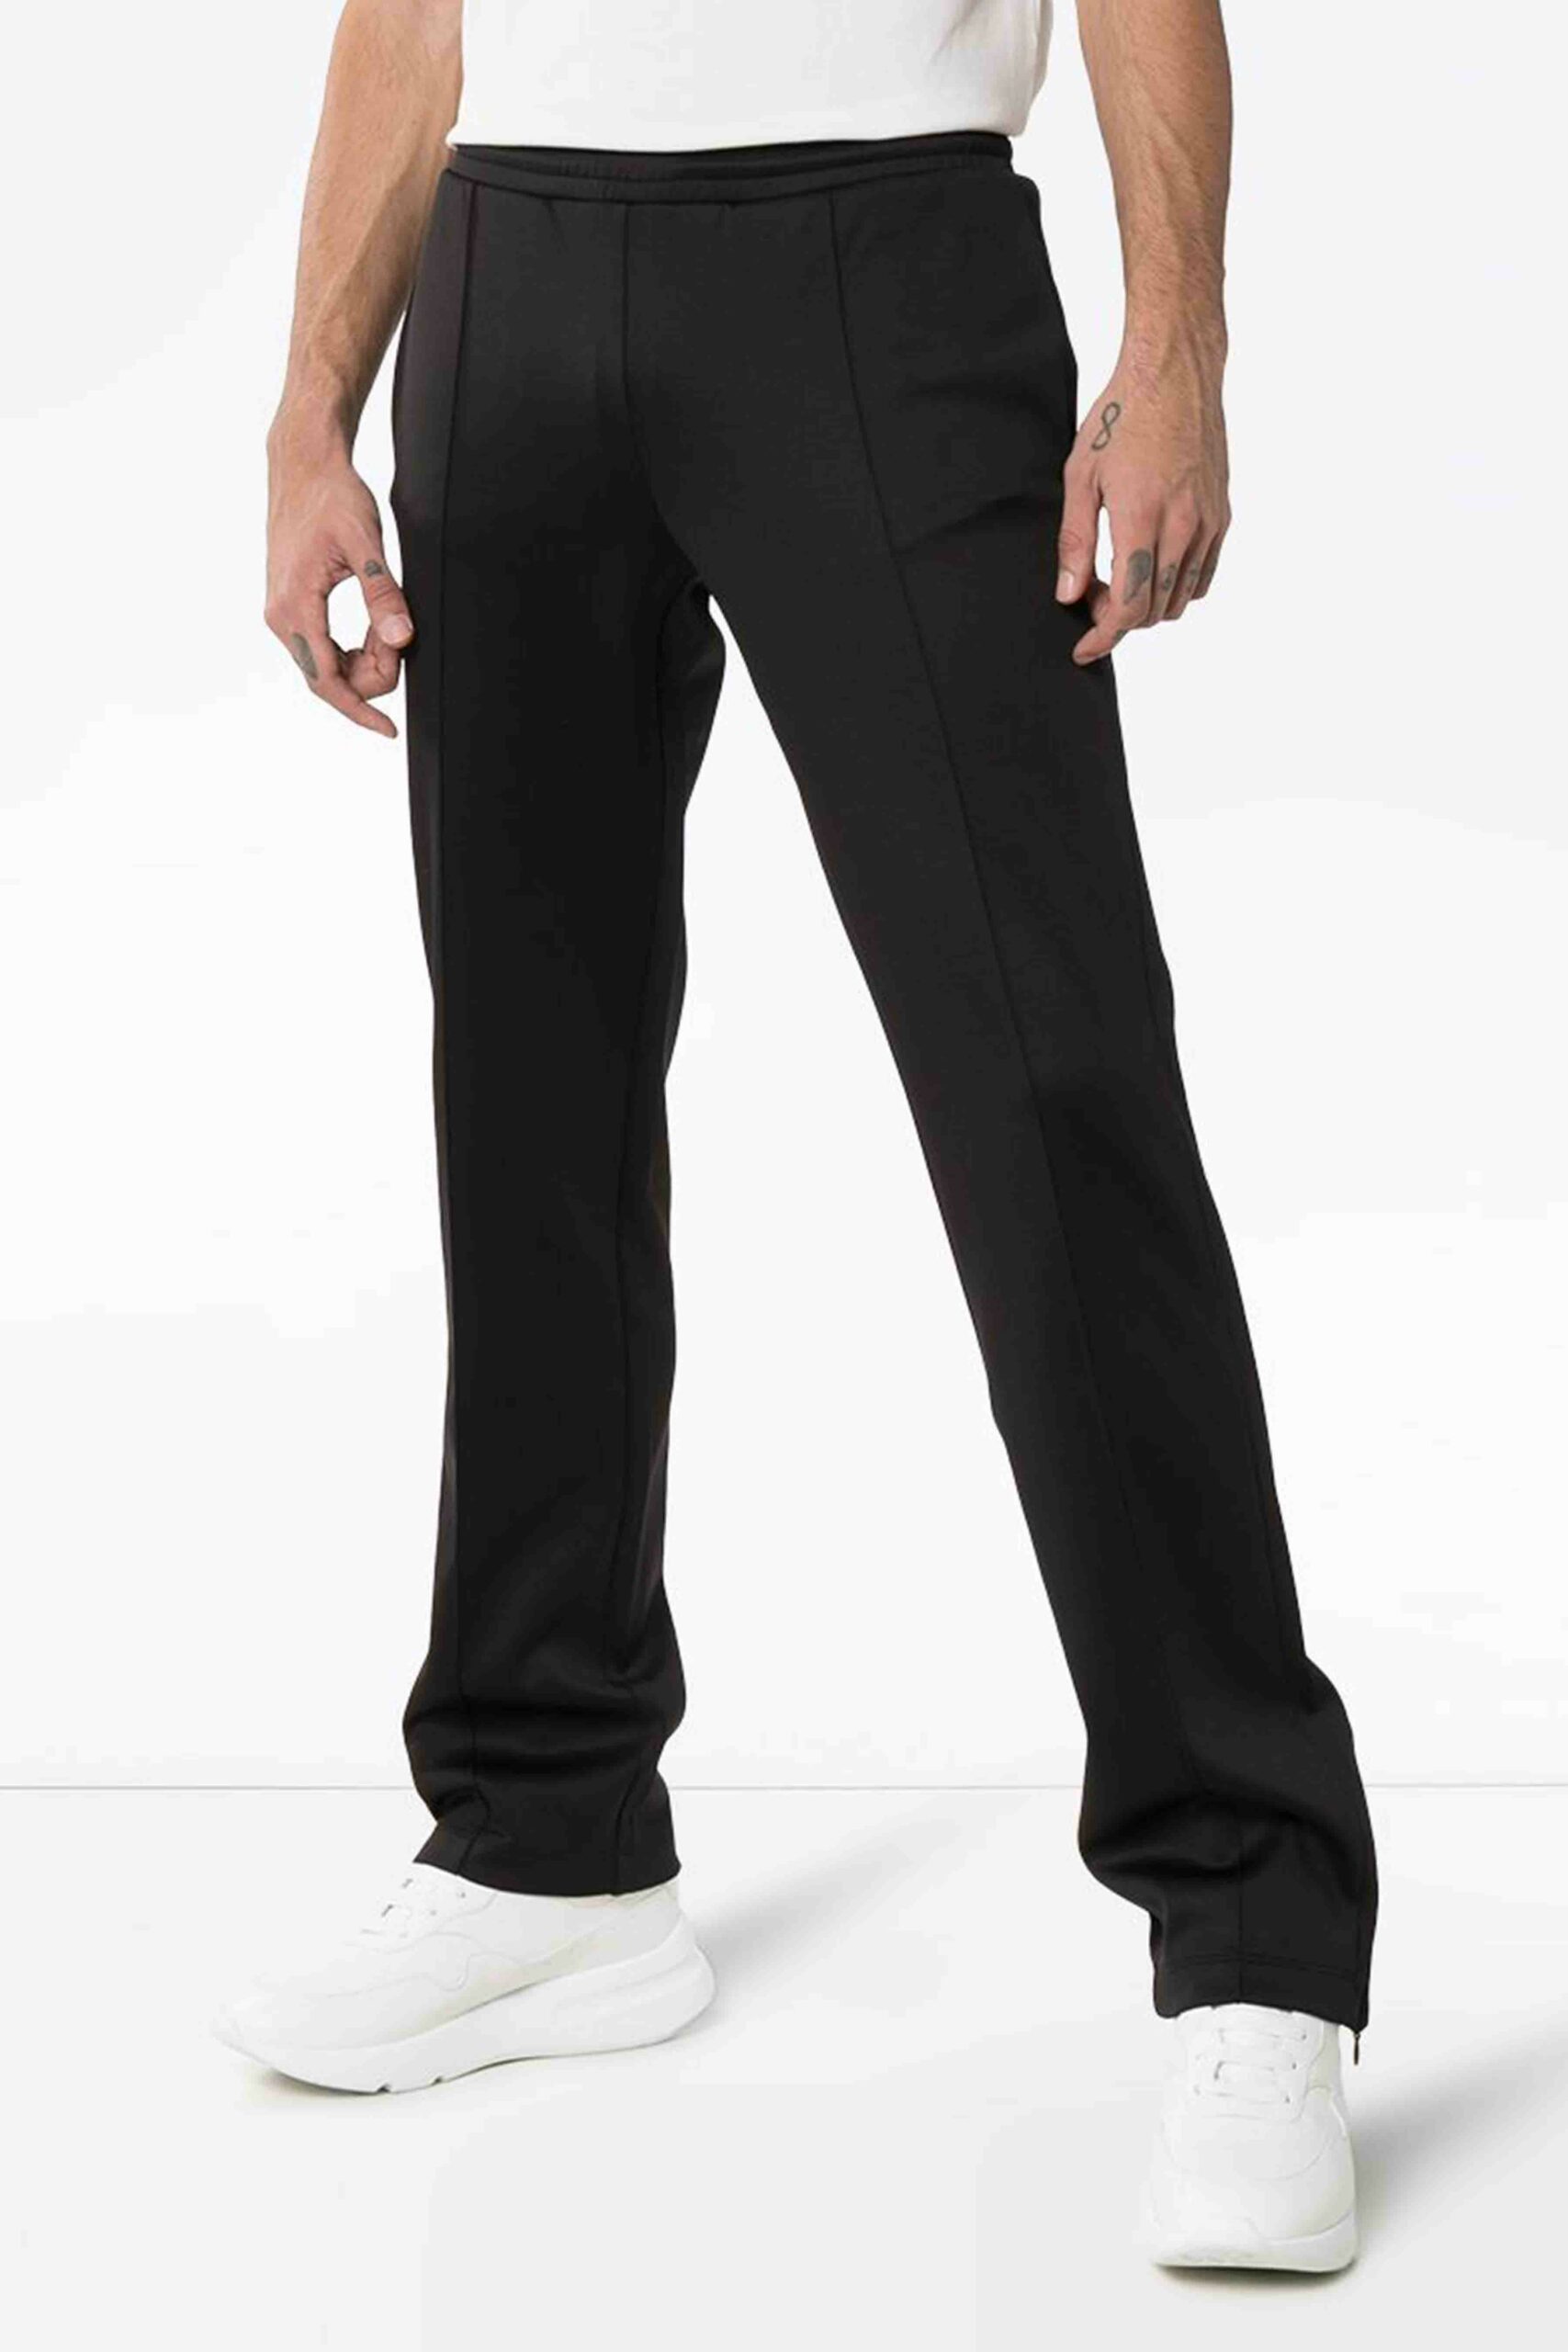 Bürotaugliche Jogginghose für Männer: So kreierst du einen stylischen Business-Look mit Sweatpants!